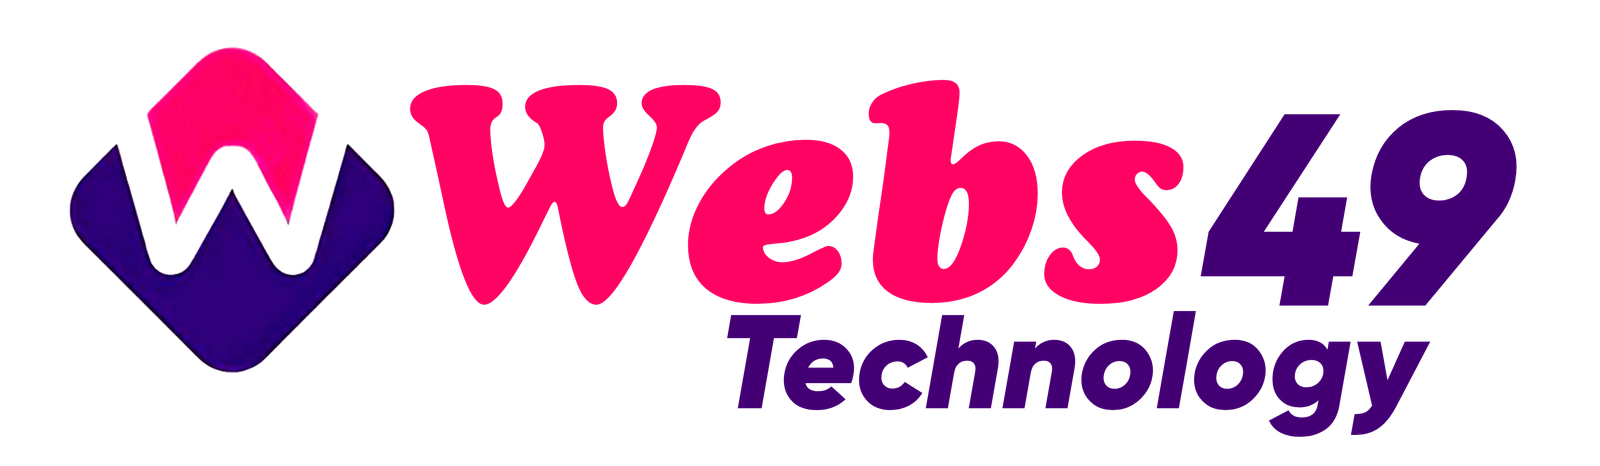 webs49-logo